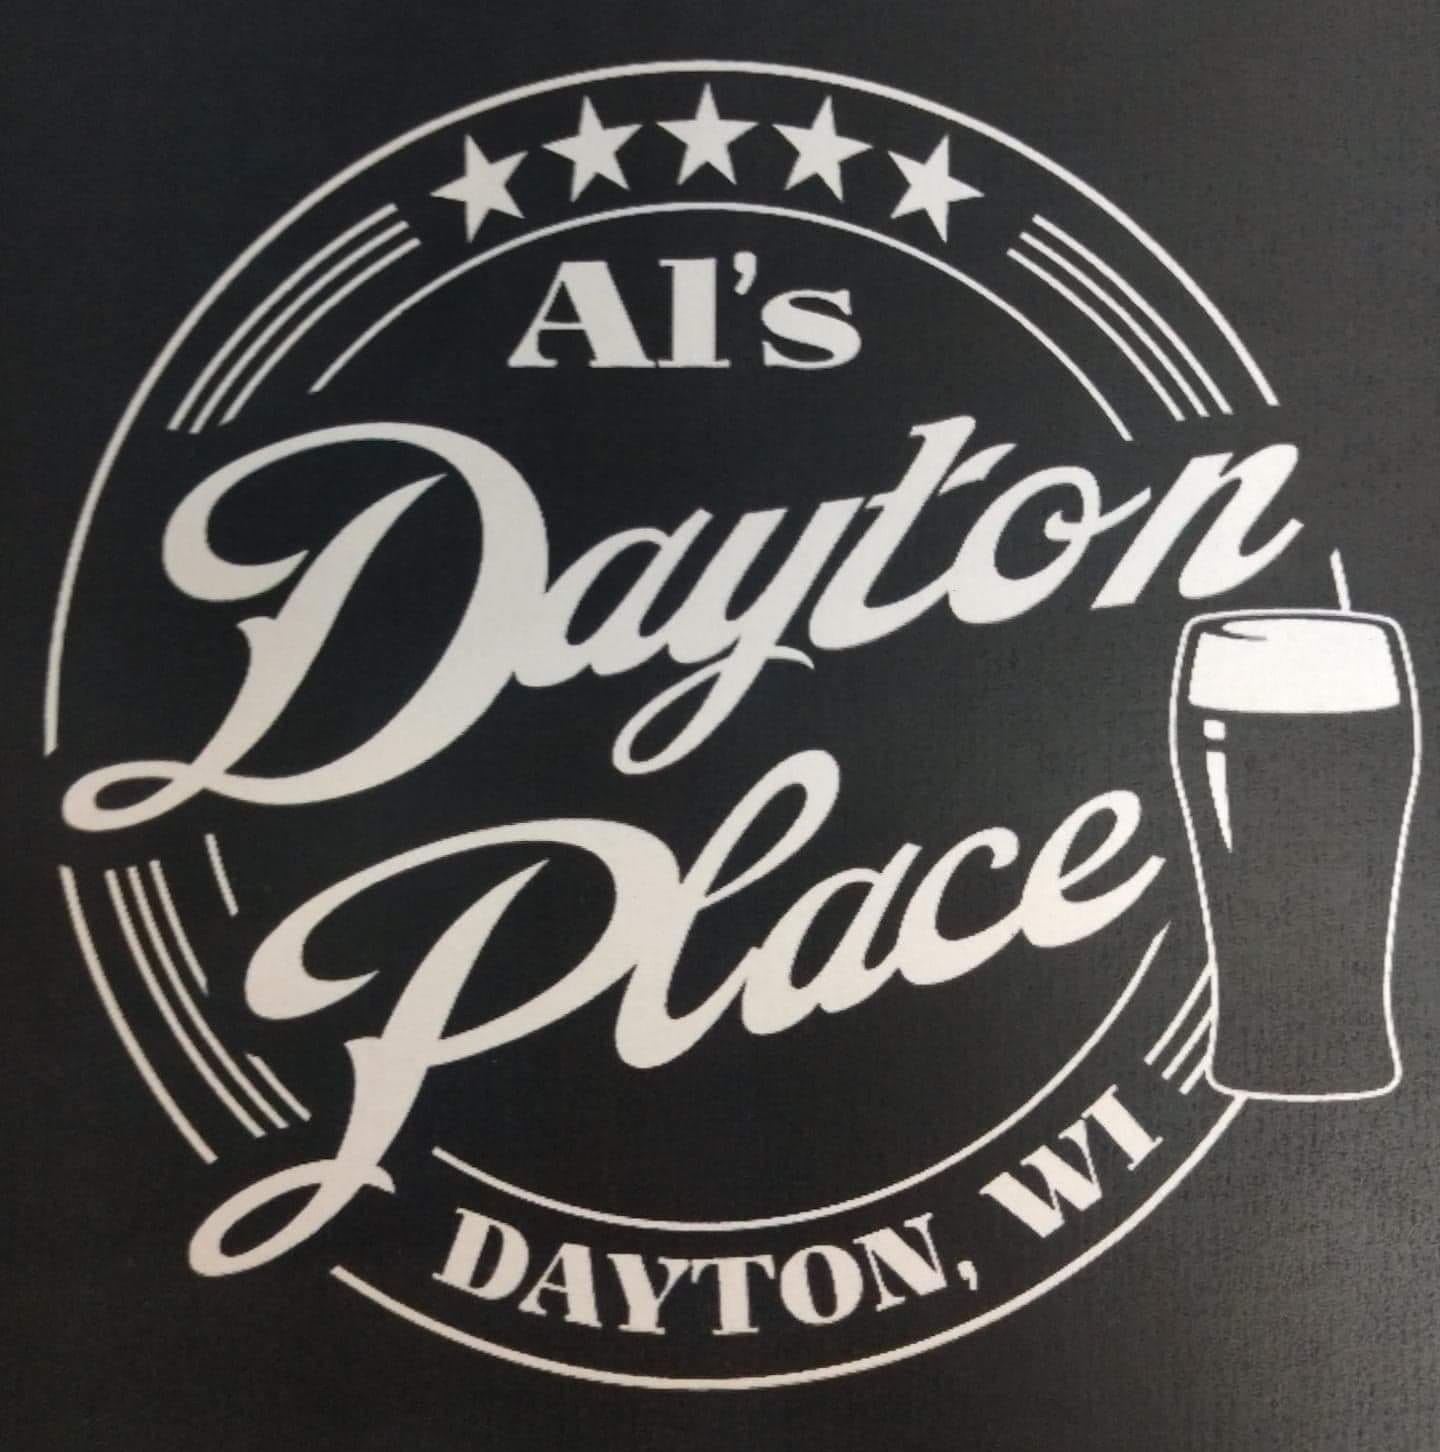 Al’s Dayton Place